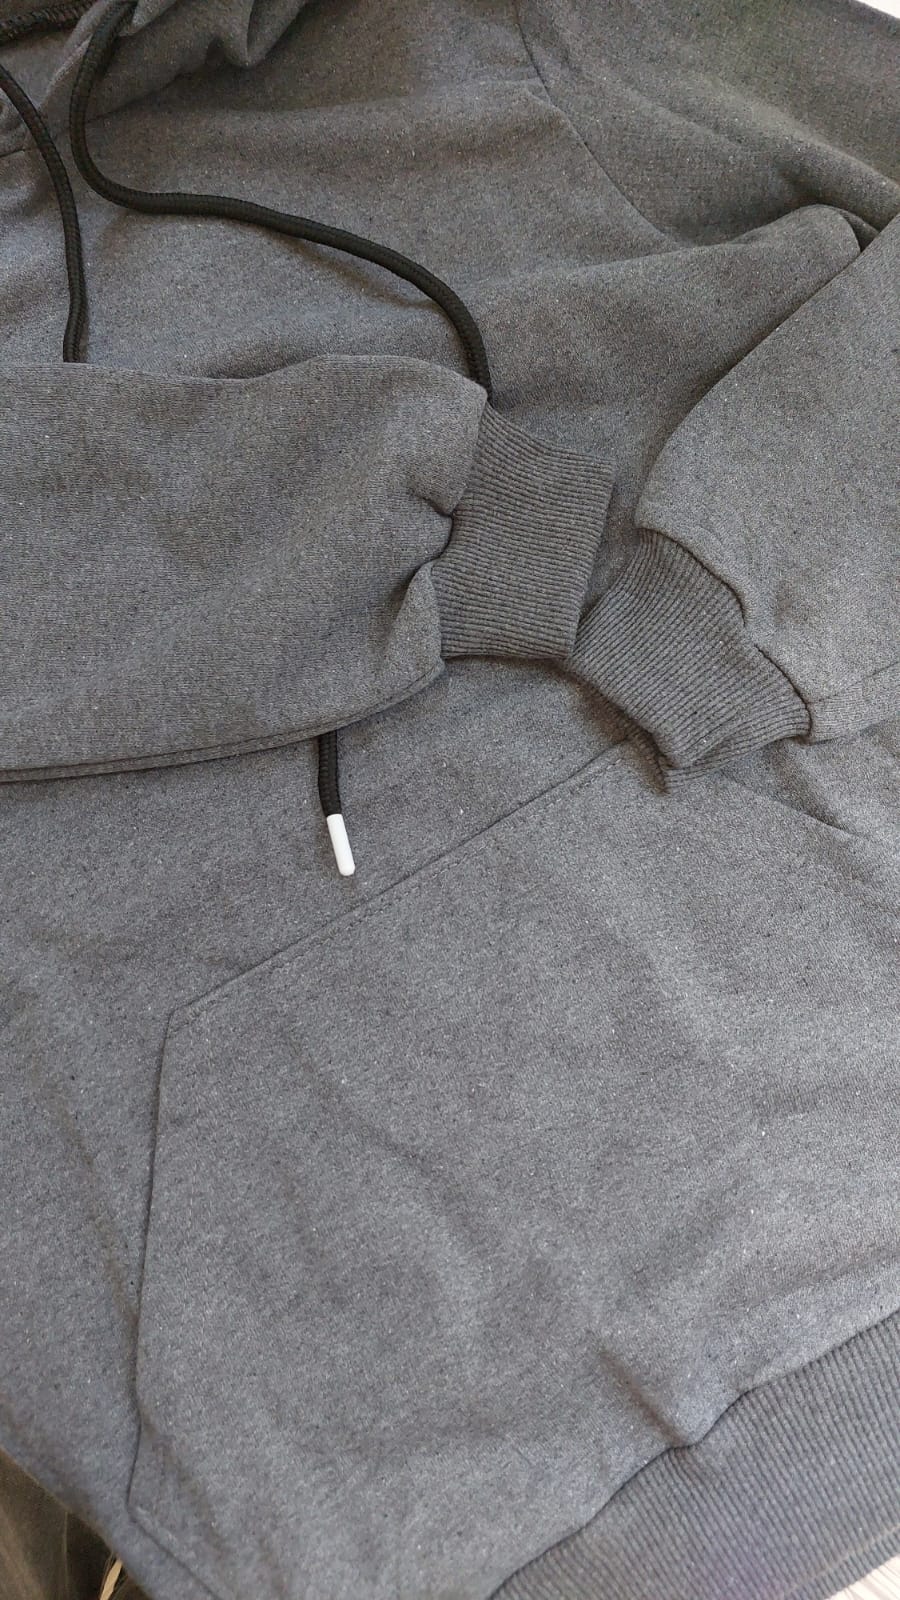 sweatshirt tasarla uygun fiyat yuvarlak yaka iki iplik 5